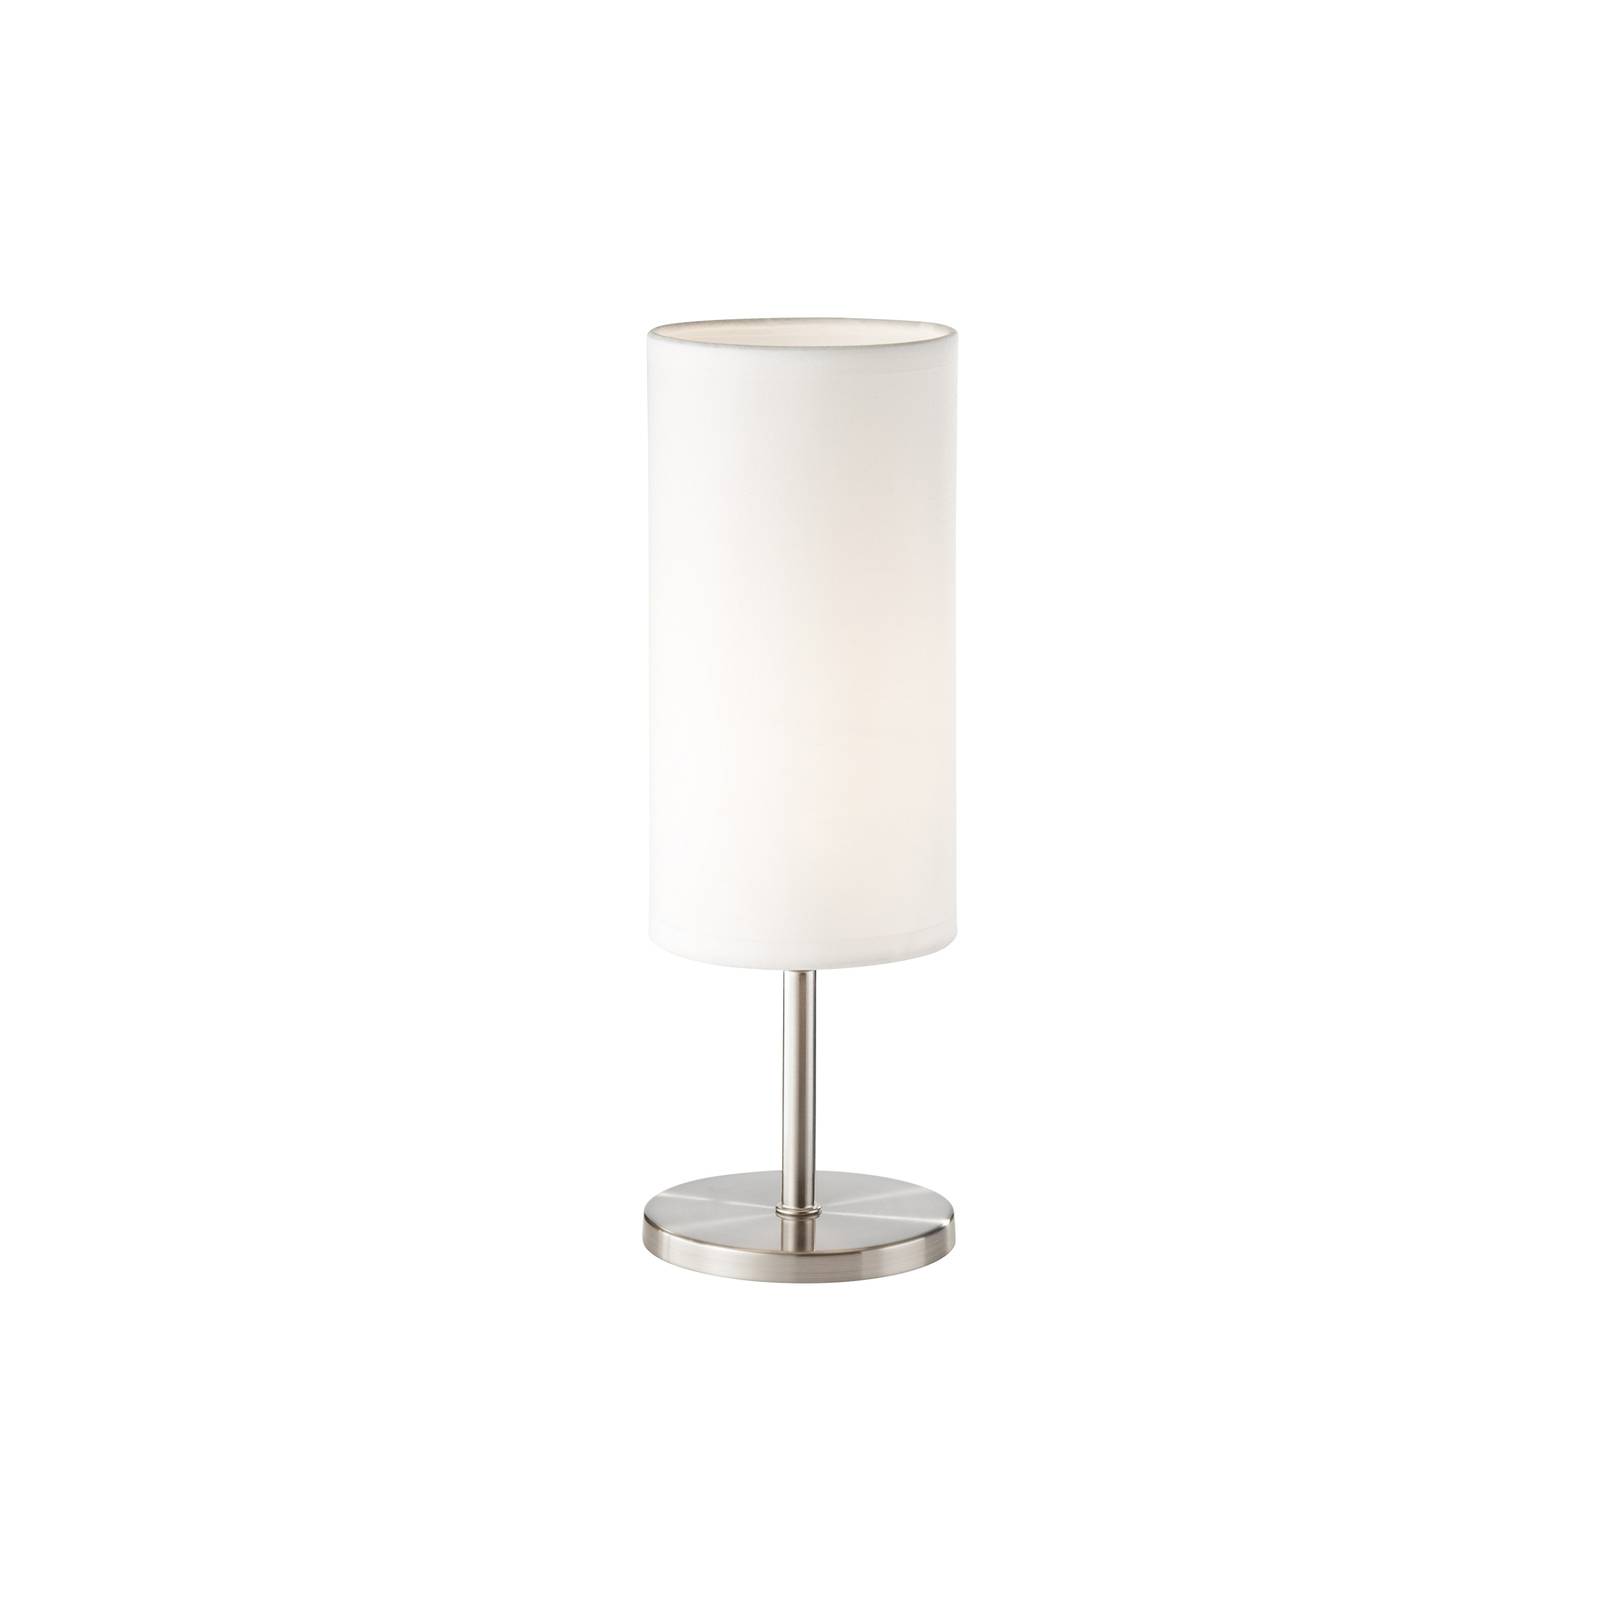 Tischlampe Kira, Textilschirm, nickel/weiß von FH Lighting